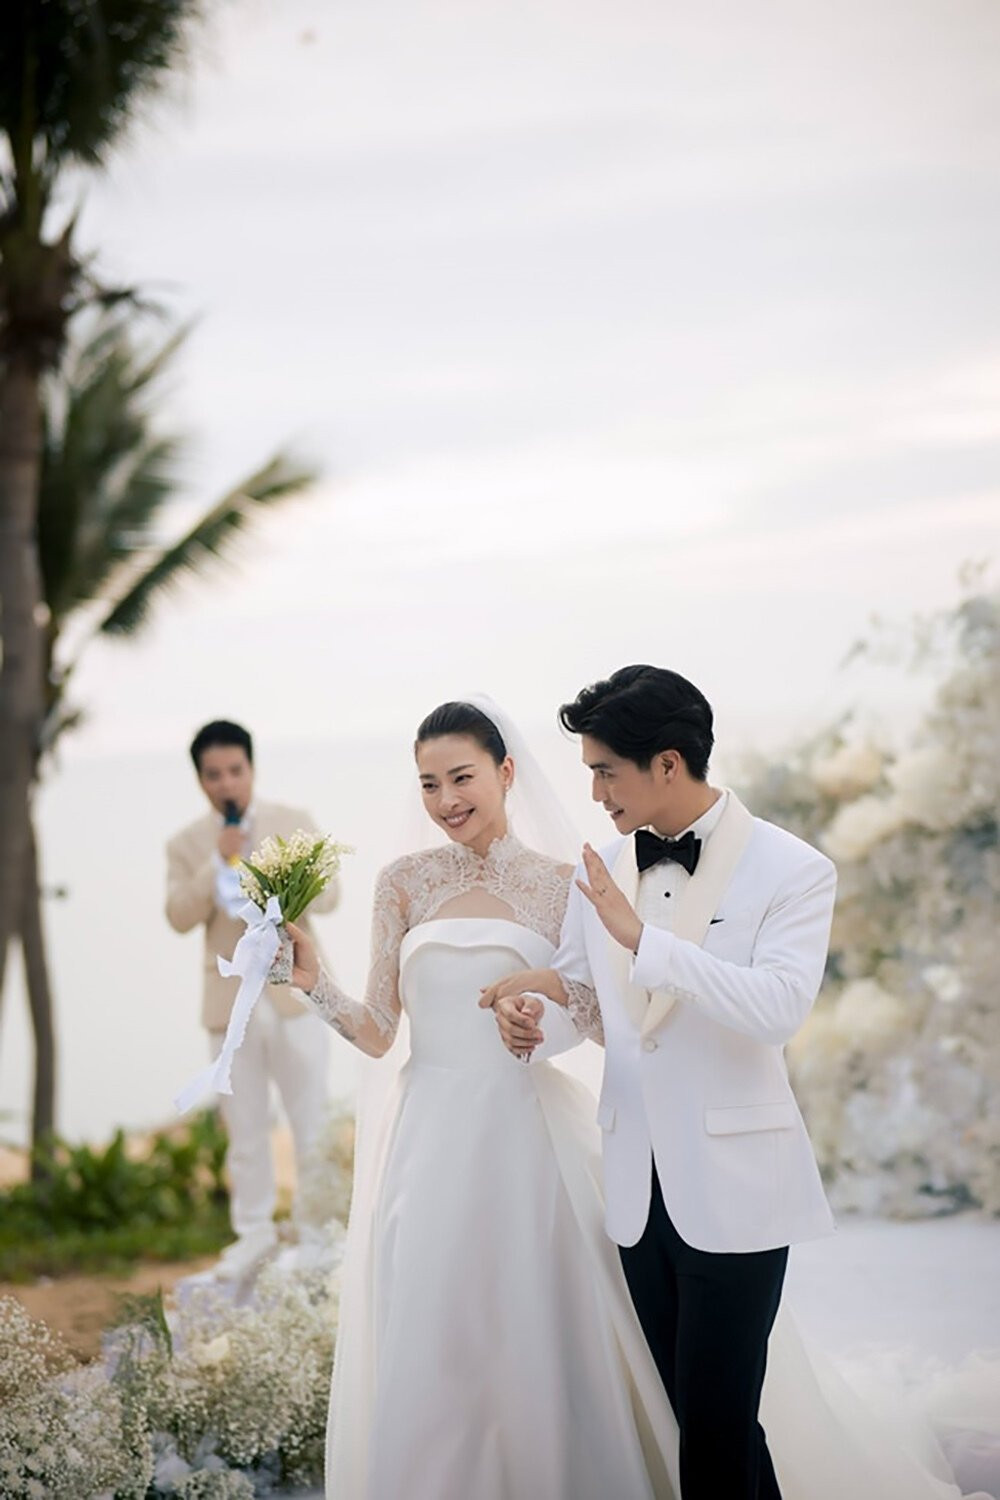 Ngô Thanh Vân tổ chức đám cưới vào tháng 5/2022 tại Đà Nẵng. Cô bày tỏ sau hơn 10 năm chờ đợi với sự cô đơn cùng nhiều quan niệm cũ về việc lập gia đình, Huy Trần đã xuất hiện như định mệnh của cuộc đời.